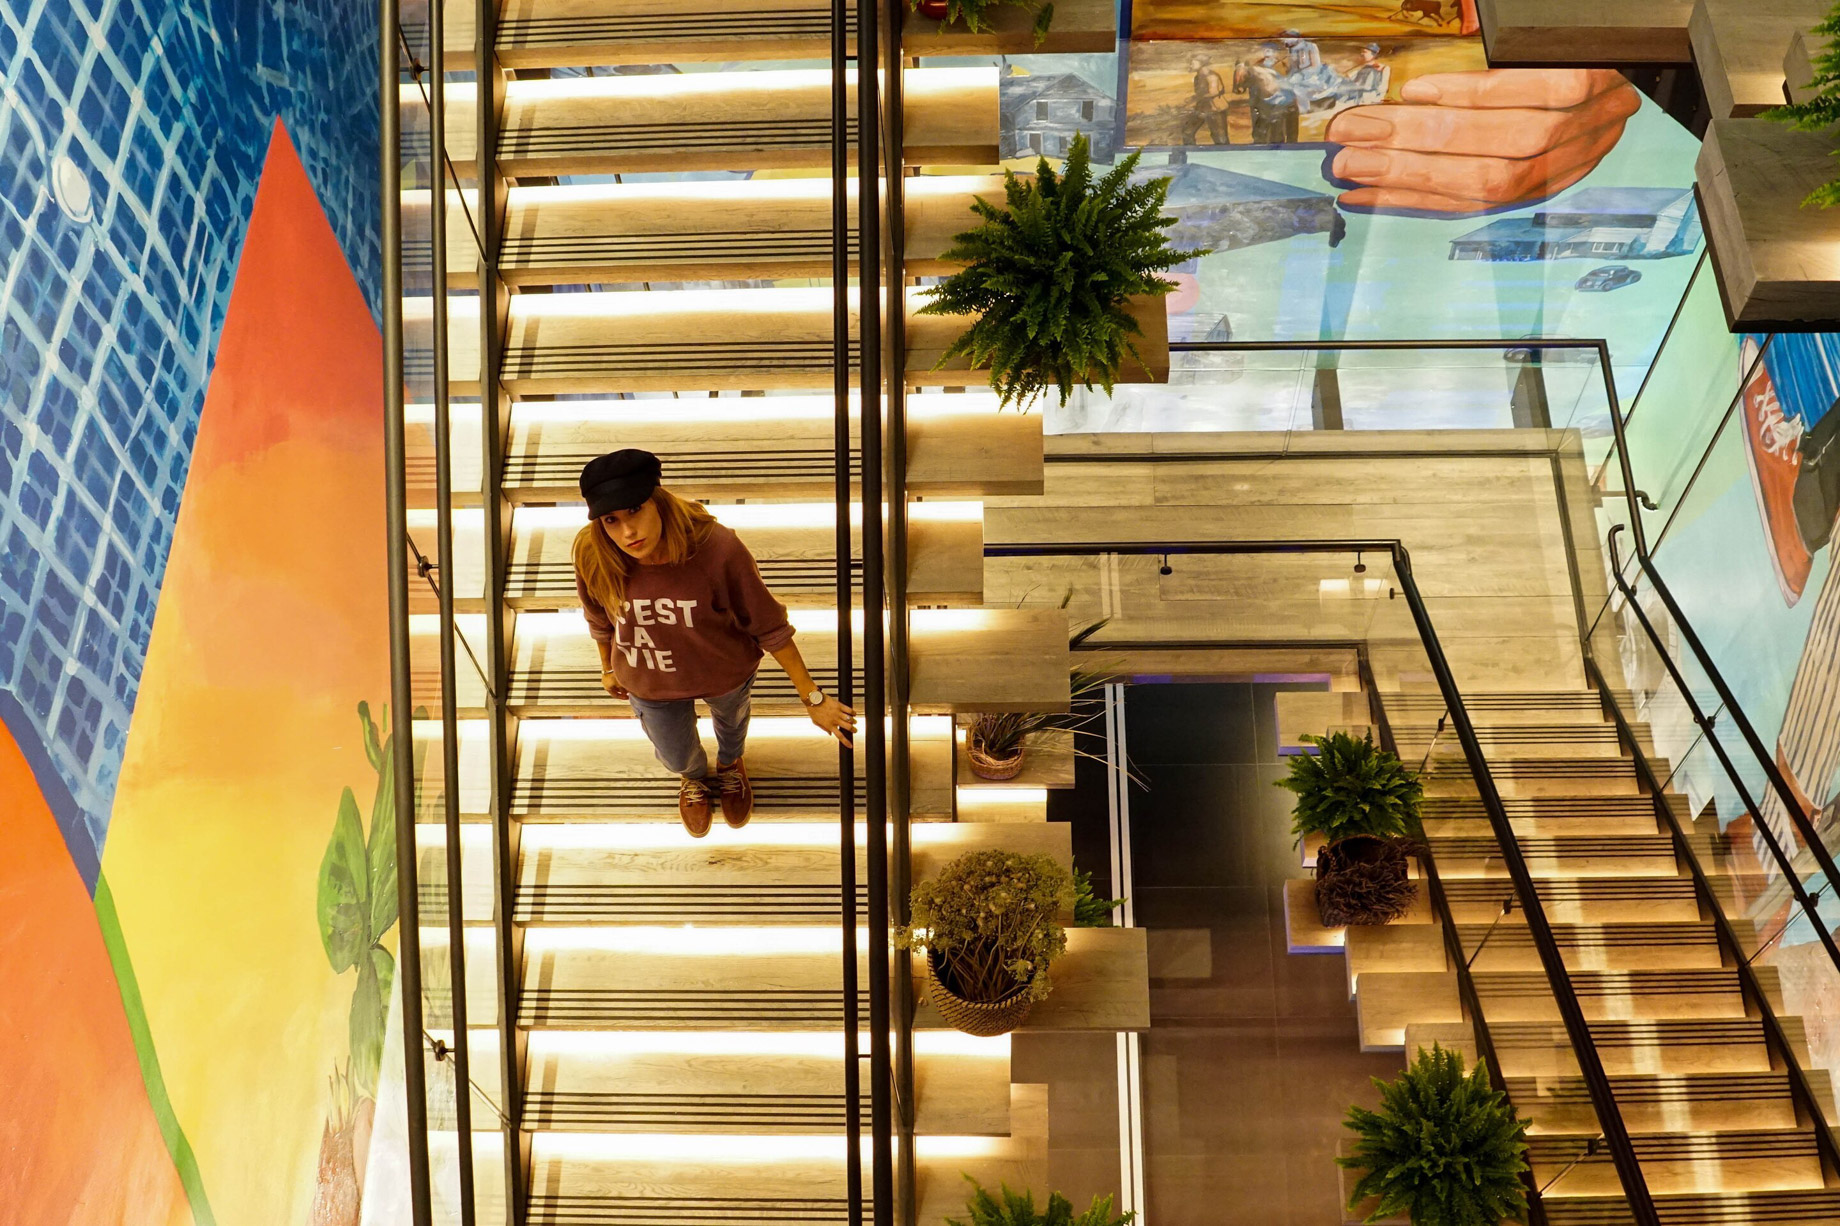 W Bellevue Hotel – Bellevue, WA, USA – Deconstructed Staircase